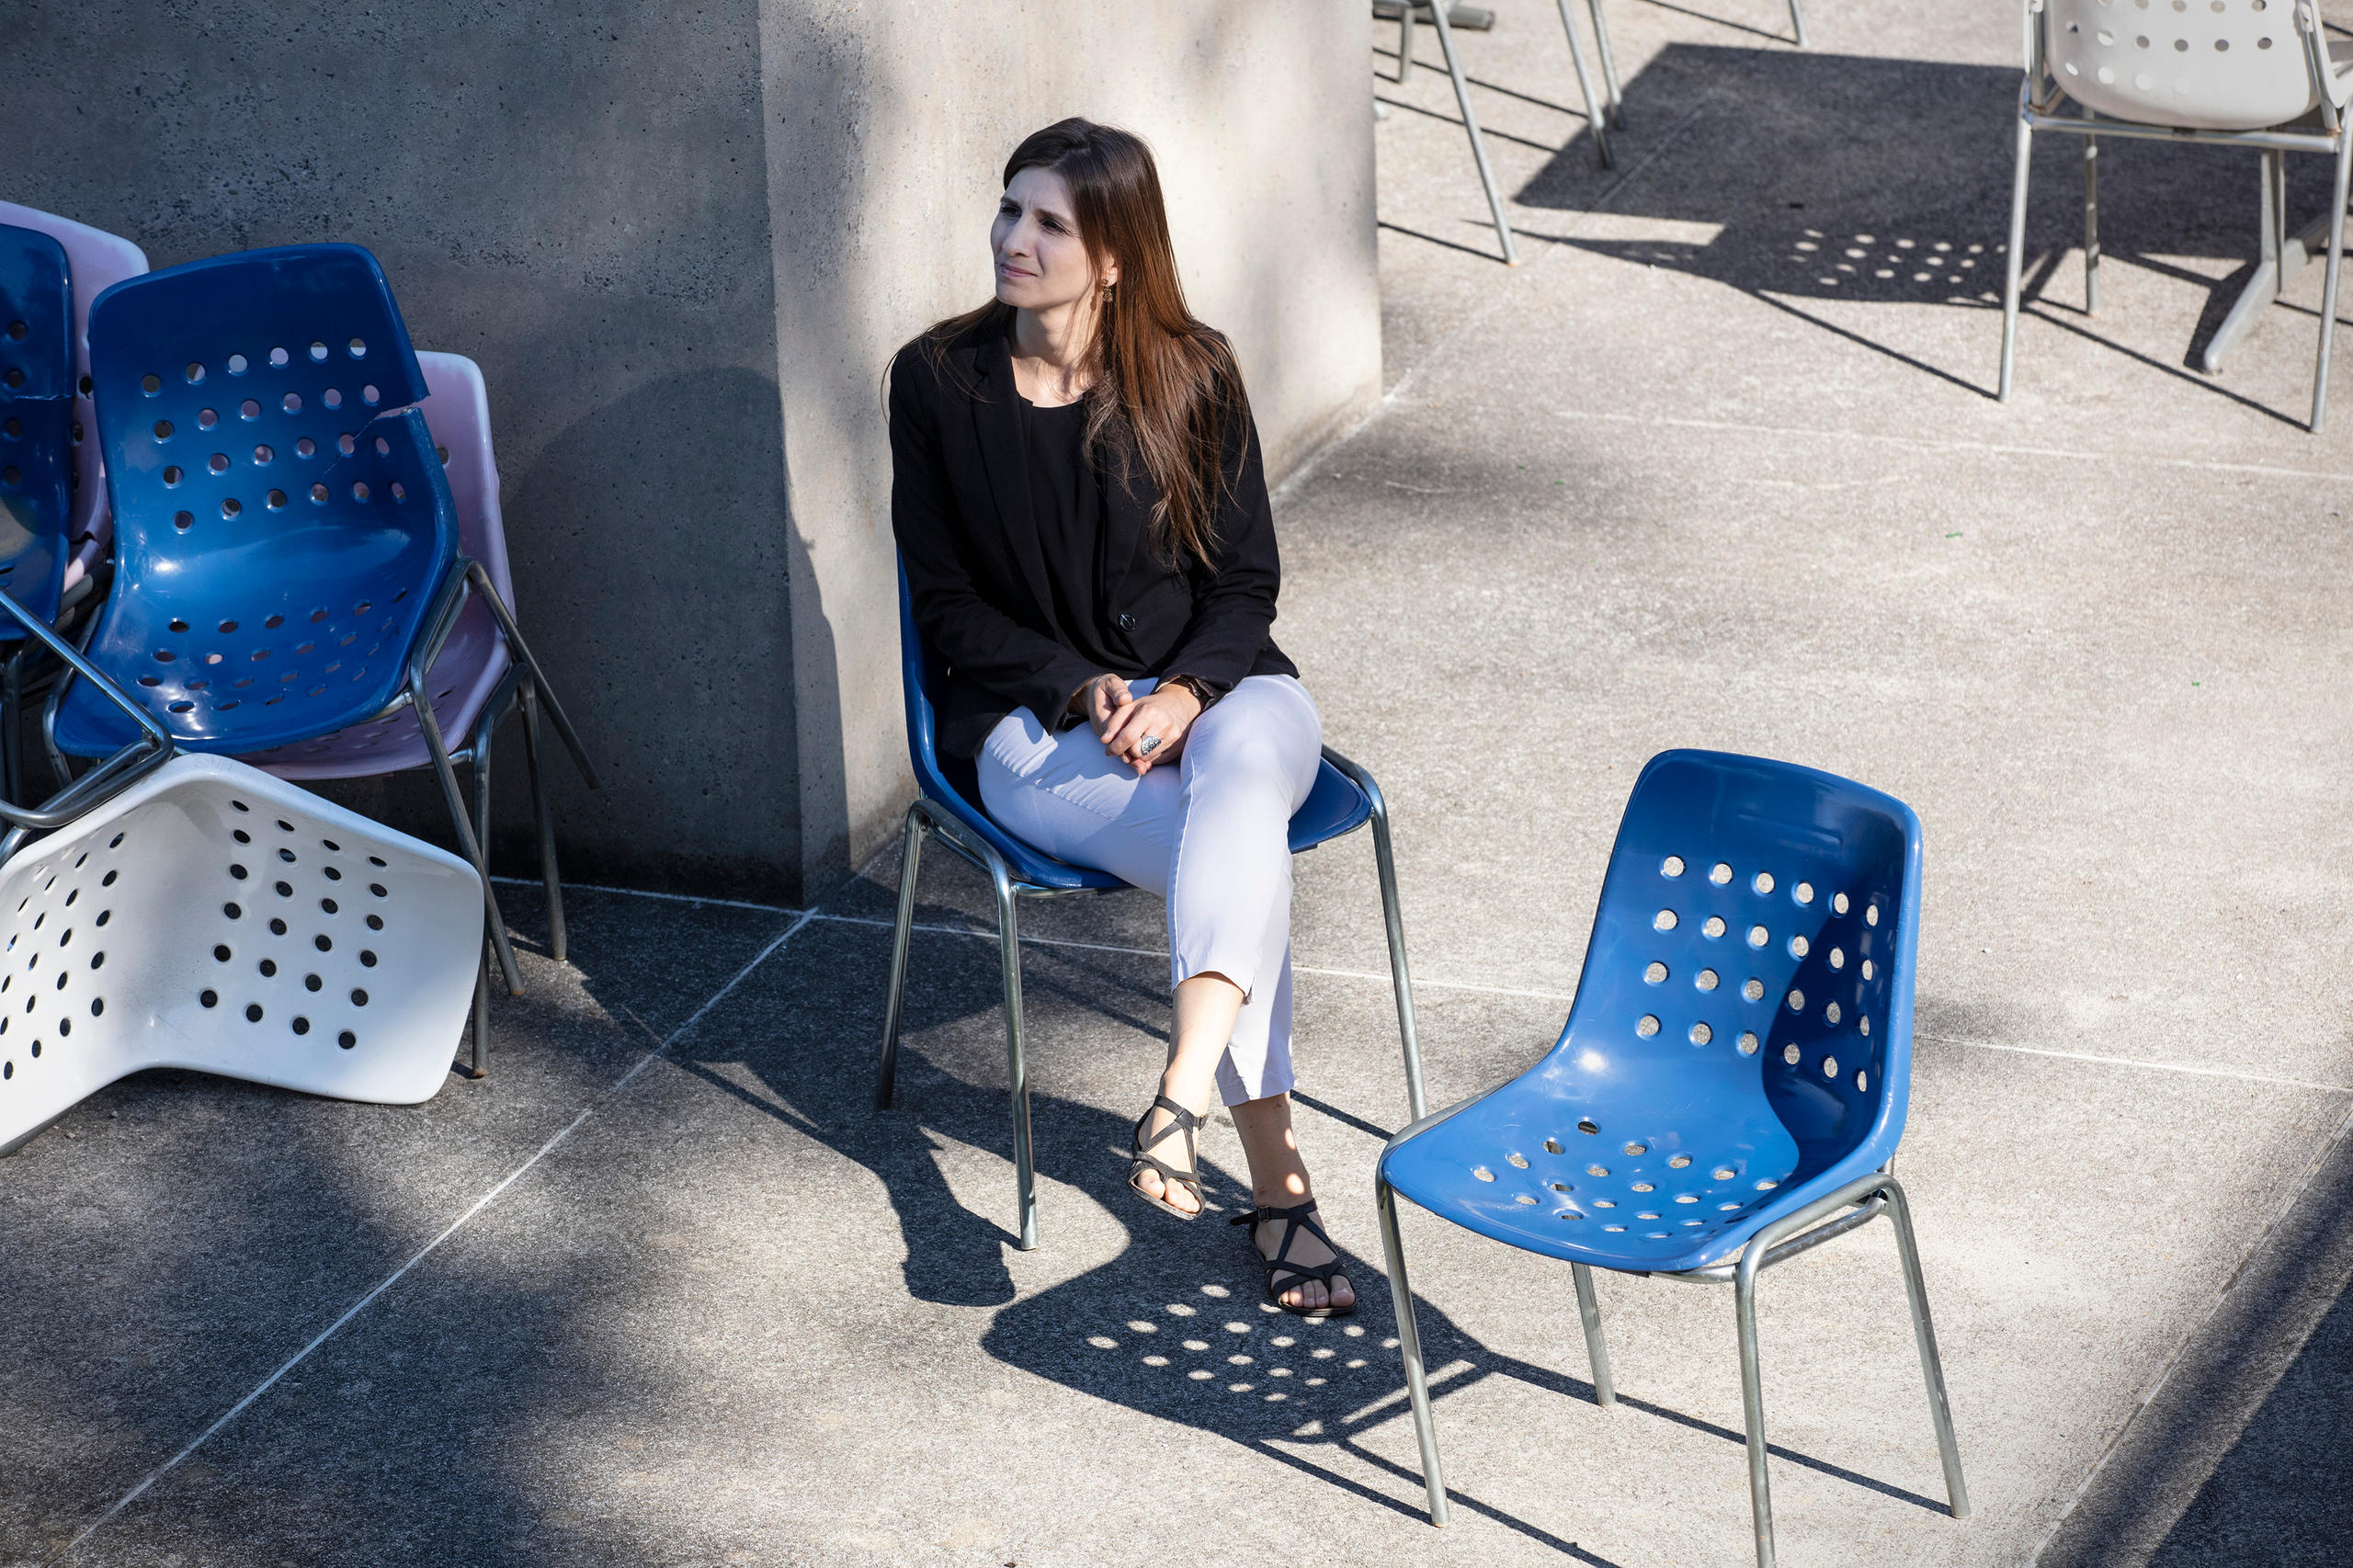 Femmes assise sur une chaise en plastique sur une terrasse en béton